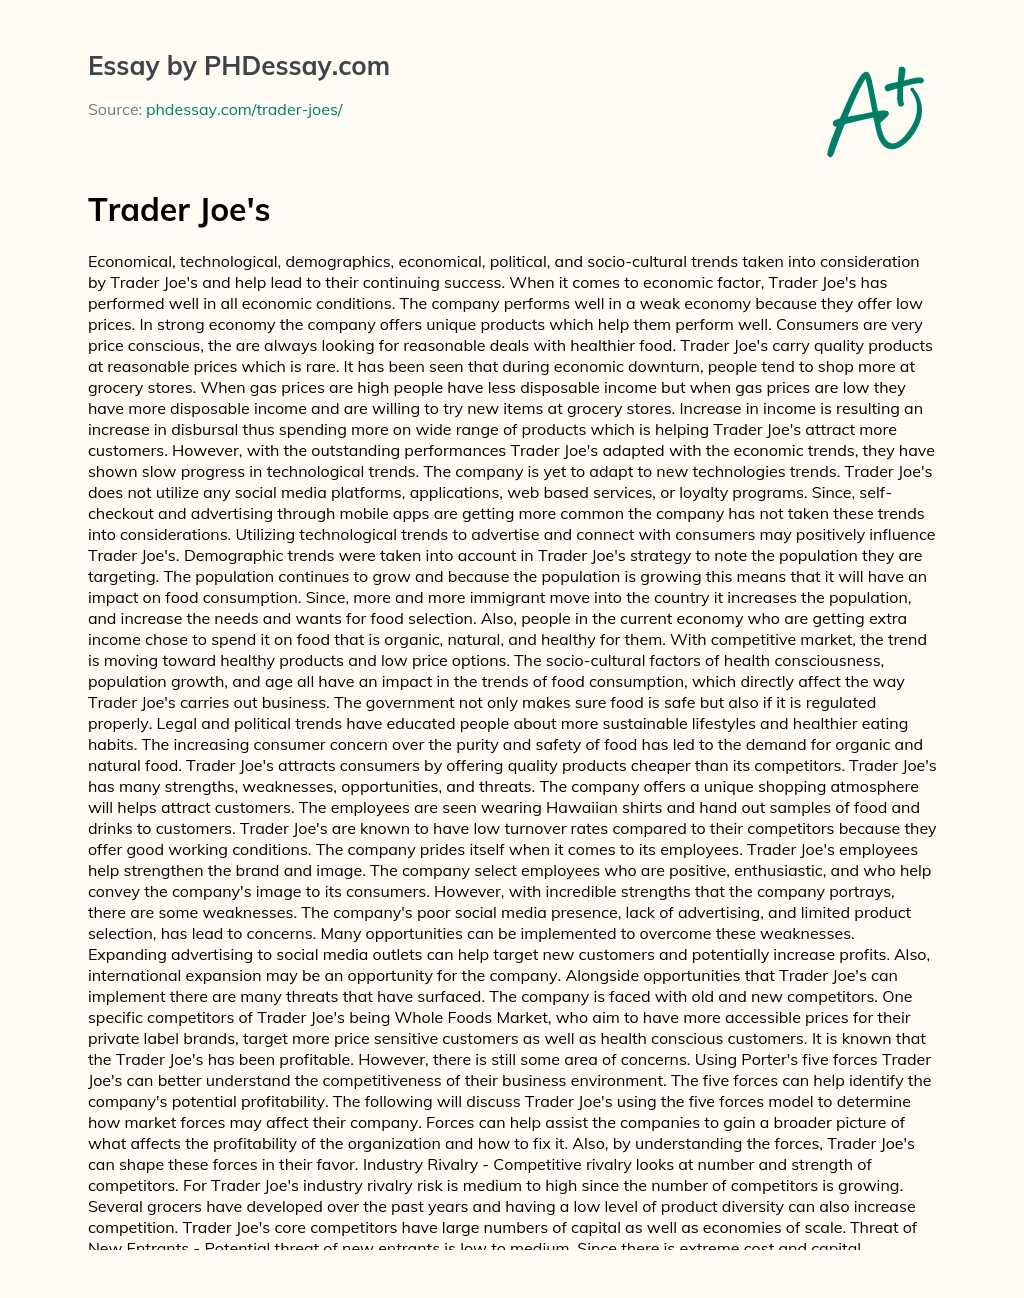 Trader Joe’s essay